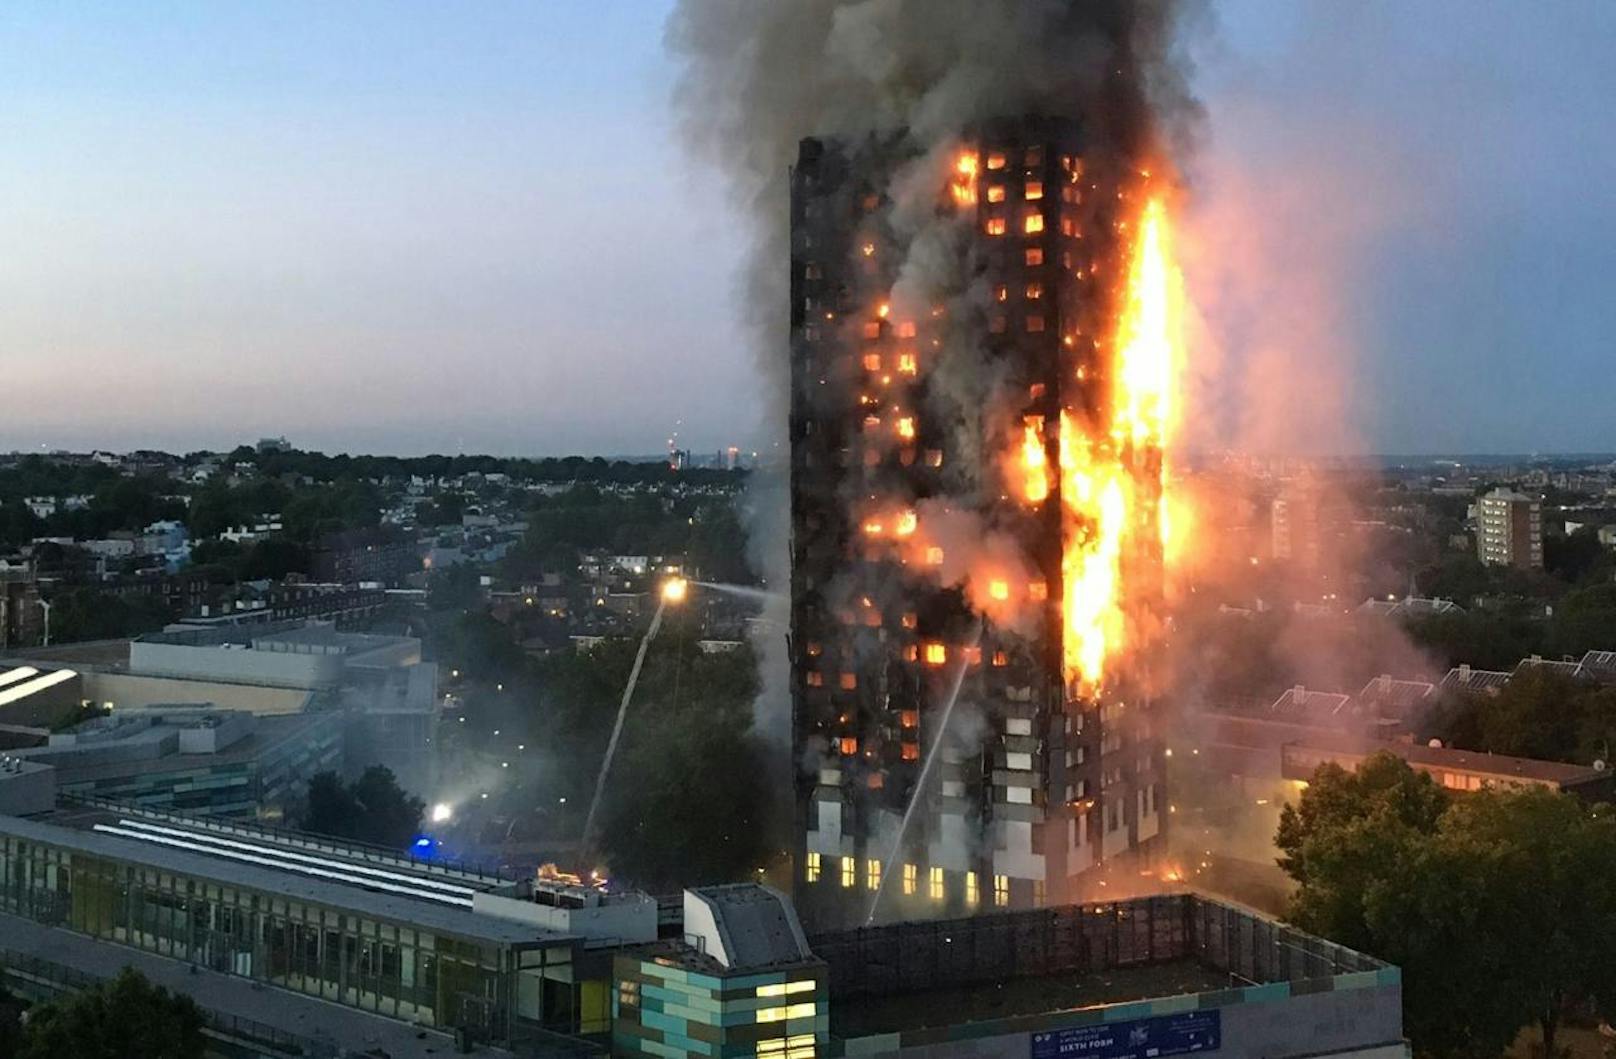 <b>14. Juni 2017:</b> Der 24-stöckige <b>Grenfell Tower</b> in London war nach dem Kurzschluss eines Kühlschranks in Vollbrand geraden. Durch das leicht entzündliche Fassadenmaterial breitete sich das Feuer innerhalb einer Stunde auf das gesamte Gebäude aus. Mindestens 79 Menschen kamen in den Flammen ums Leben. 

<b>Mehr Infos: </b> <a href="https://www.heute.at/welt/news/story/Brennender-Kuehlschrank-loeste-Hochaus-Inferno-aus-54389556" target="_blank">Brennender Kühlschrank löste Hochaus-Inferno aus</a>